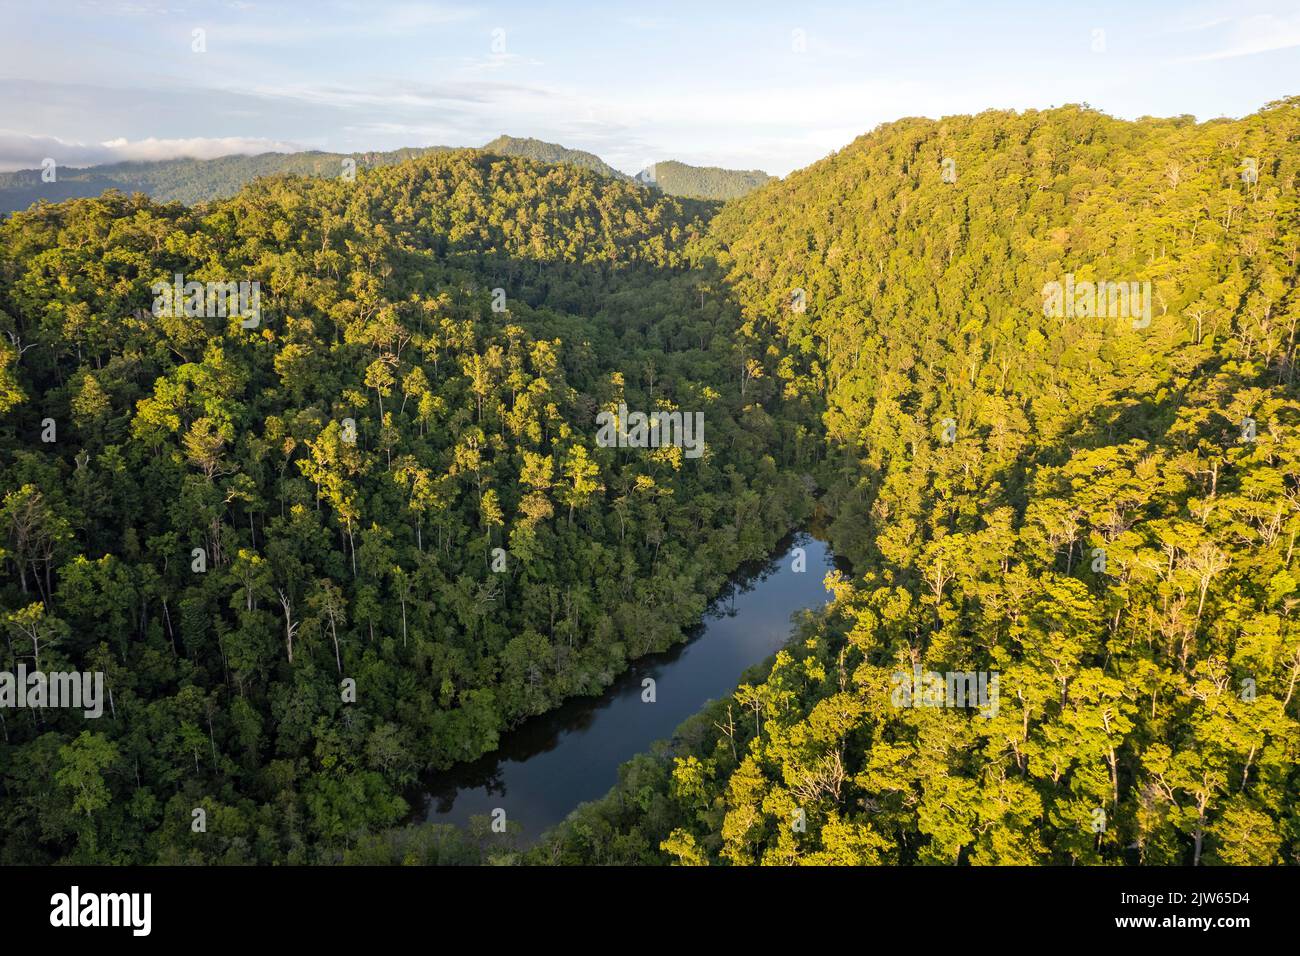 Vue aérienne de la forêt tropicale luxuriante de l'île de Batanta, Raja Ampat Indonésie. Banque D'Images